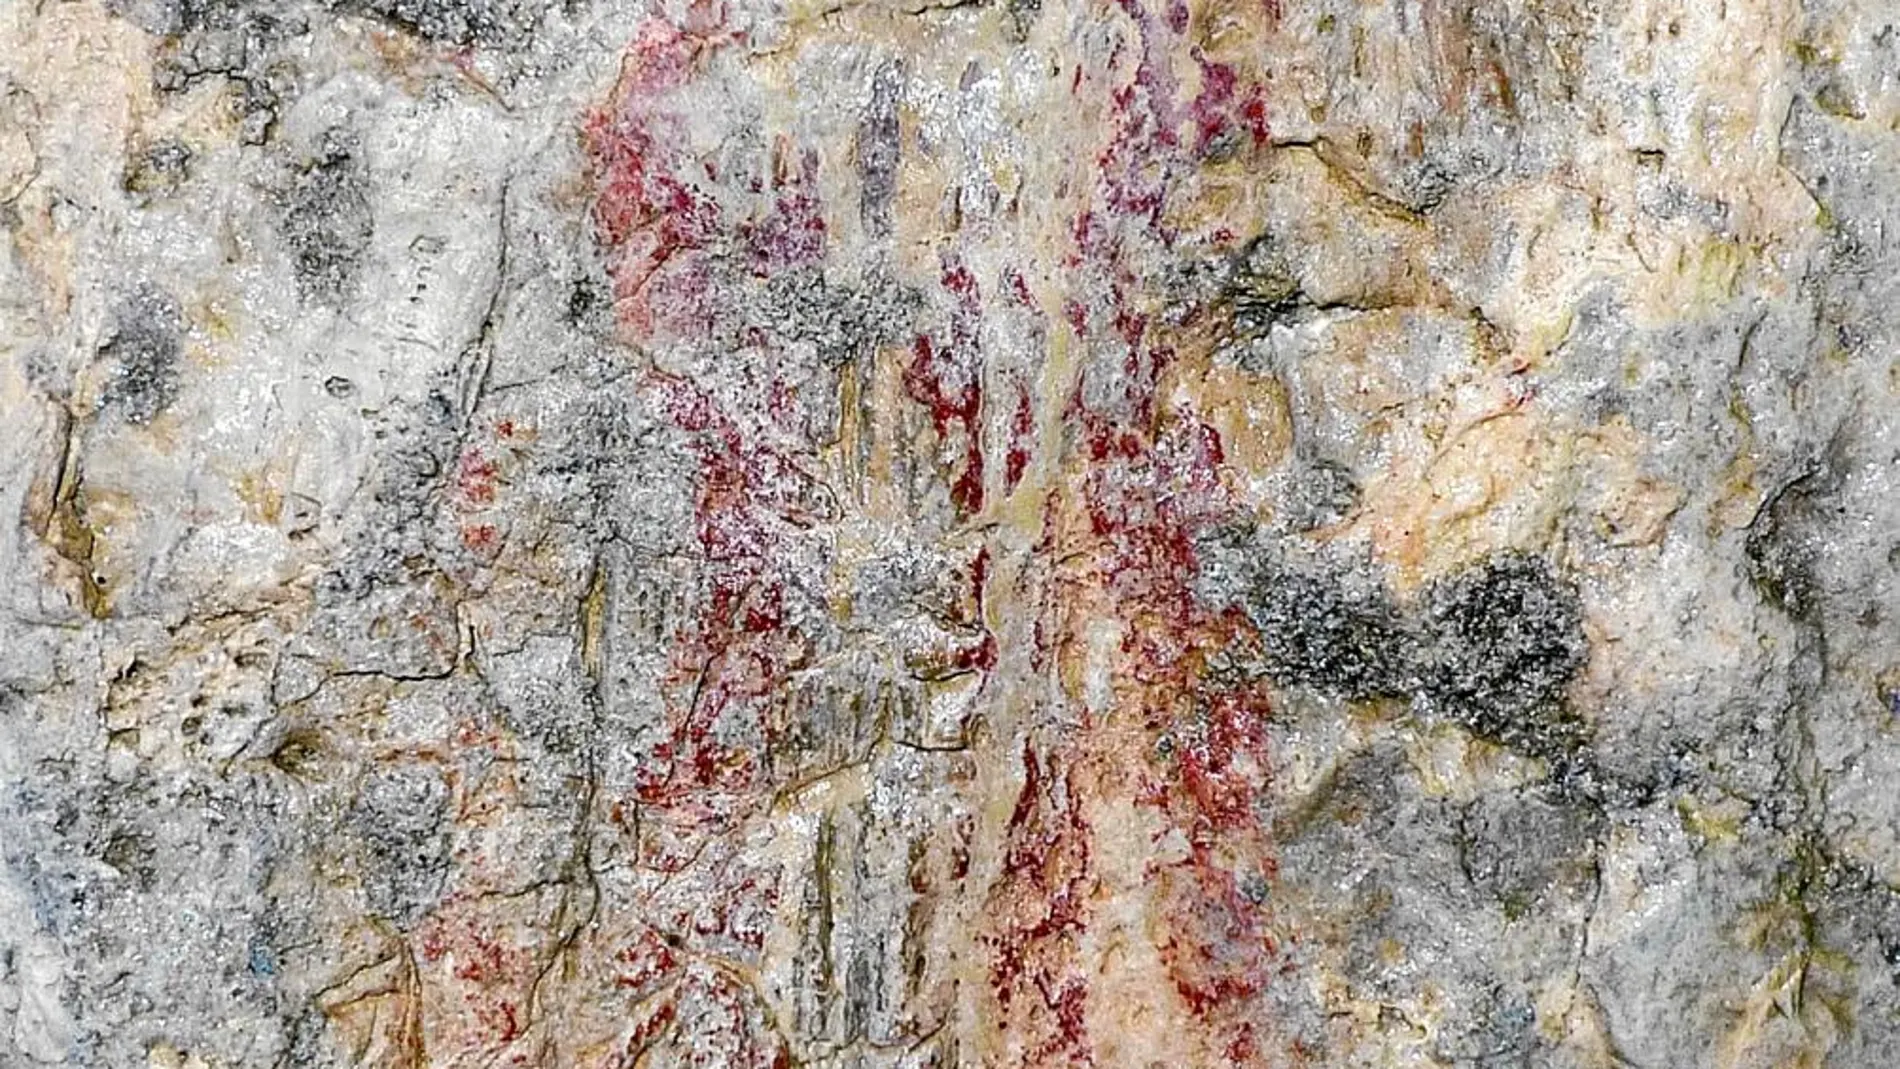 Uno de los hallazgos más importantes ha sido el de pinturas esquemáticas en el interior de cuevas que podrían formar parte de los ritos funerarios del final del Neolítico